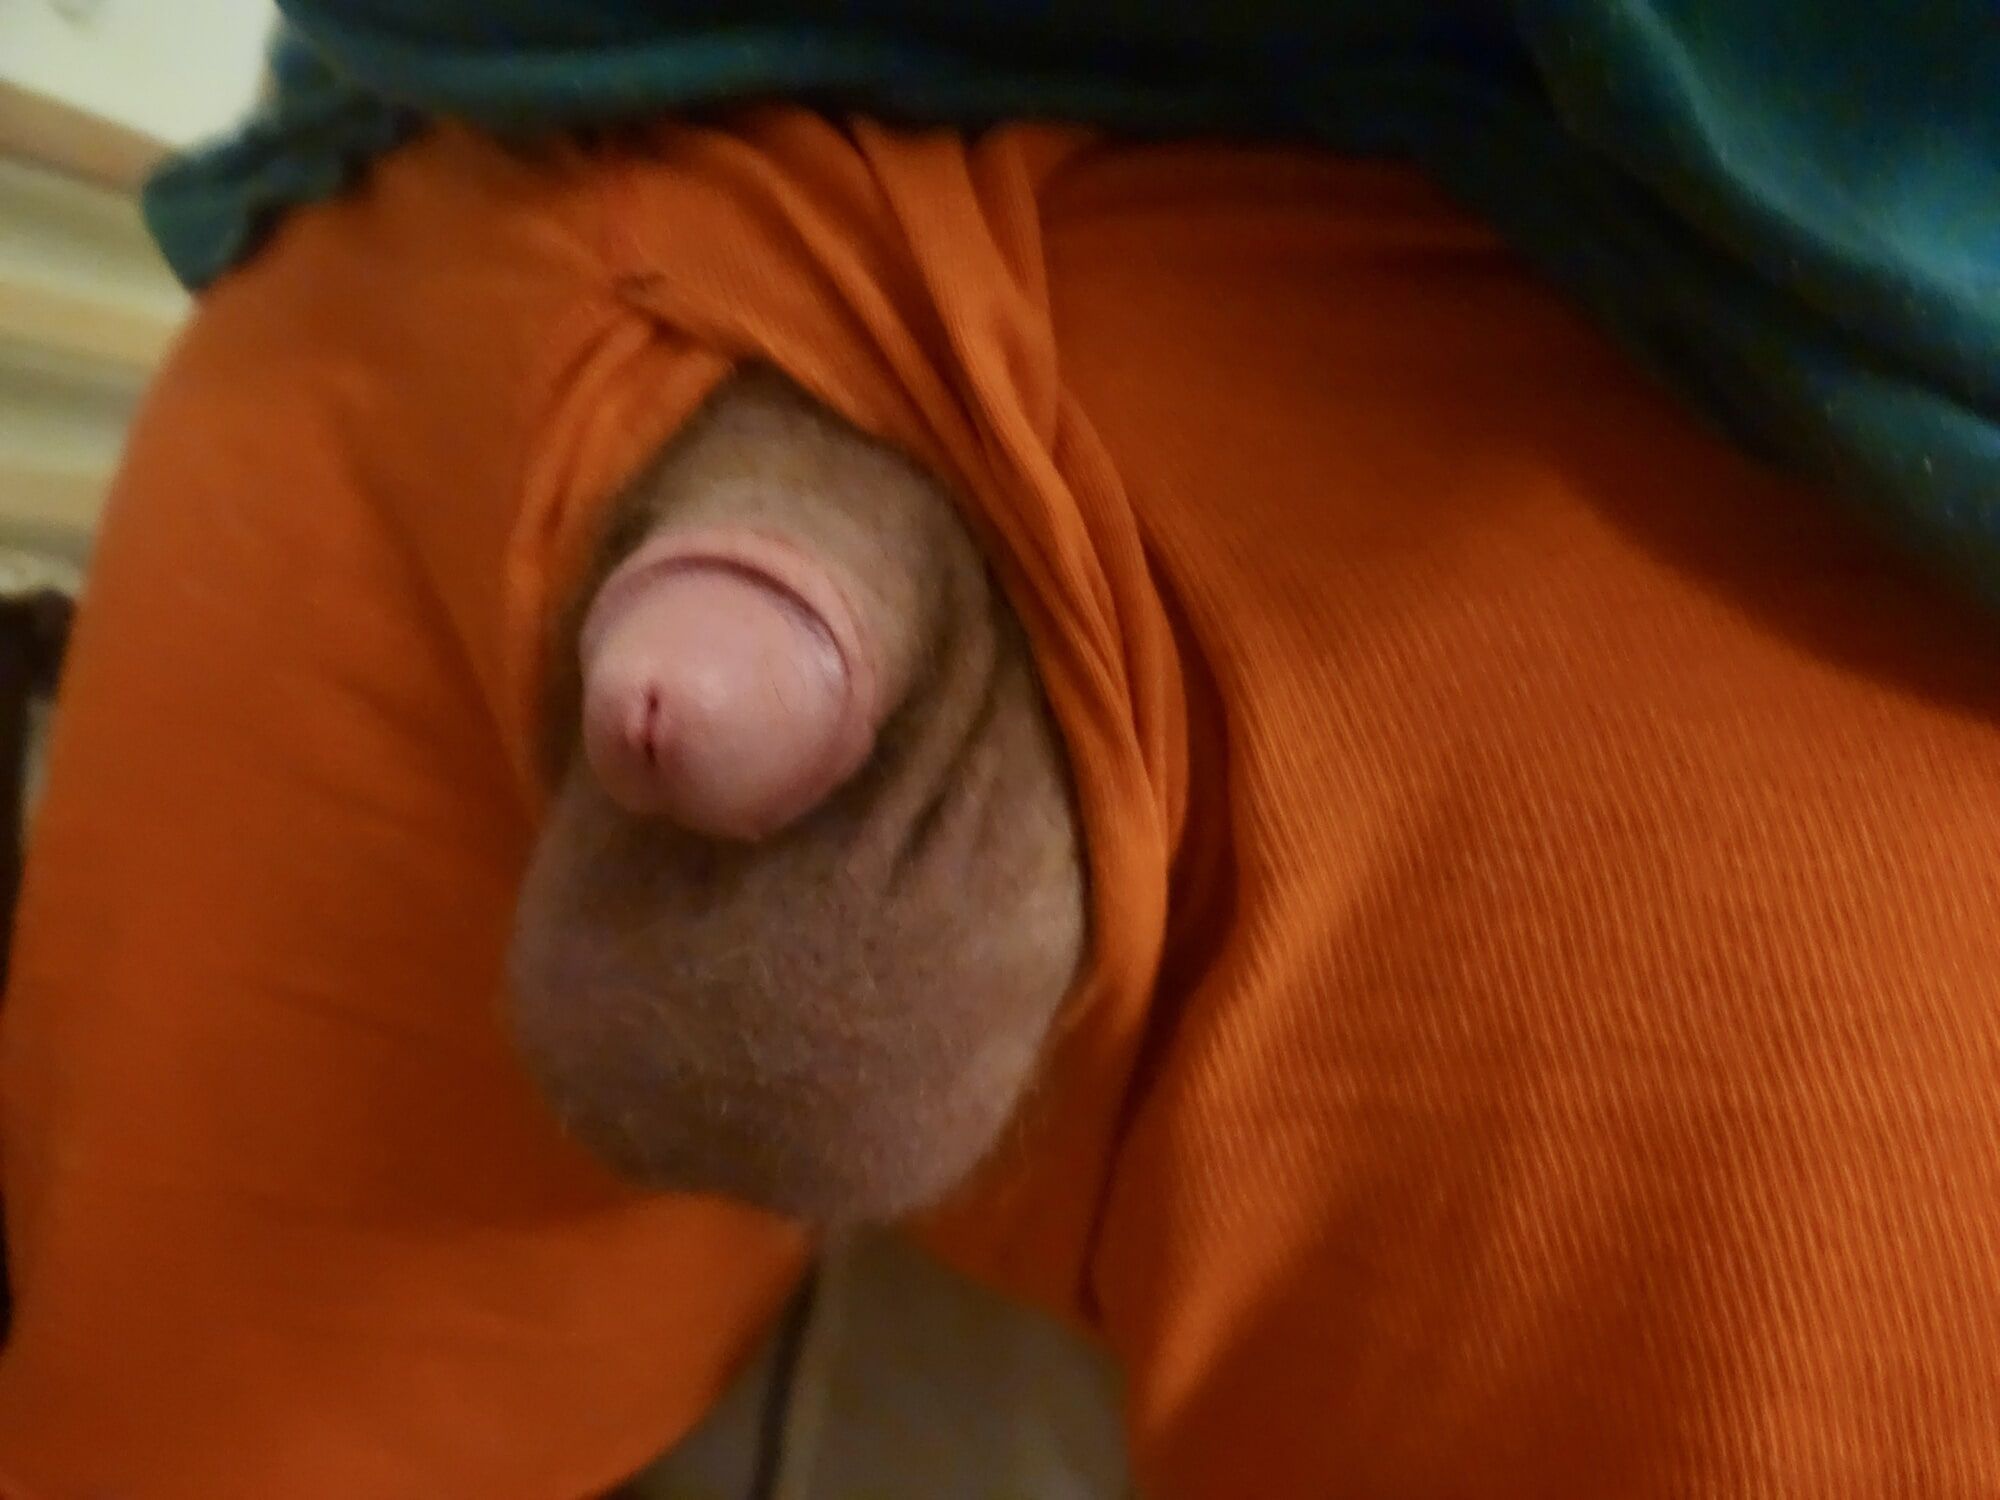 My cock in orange underwear  #2